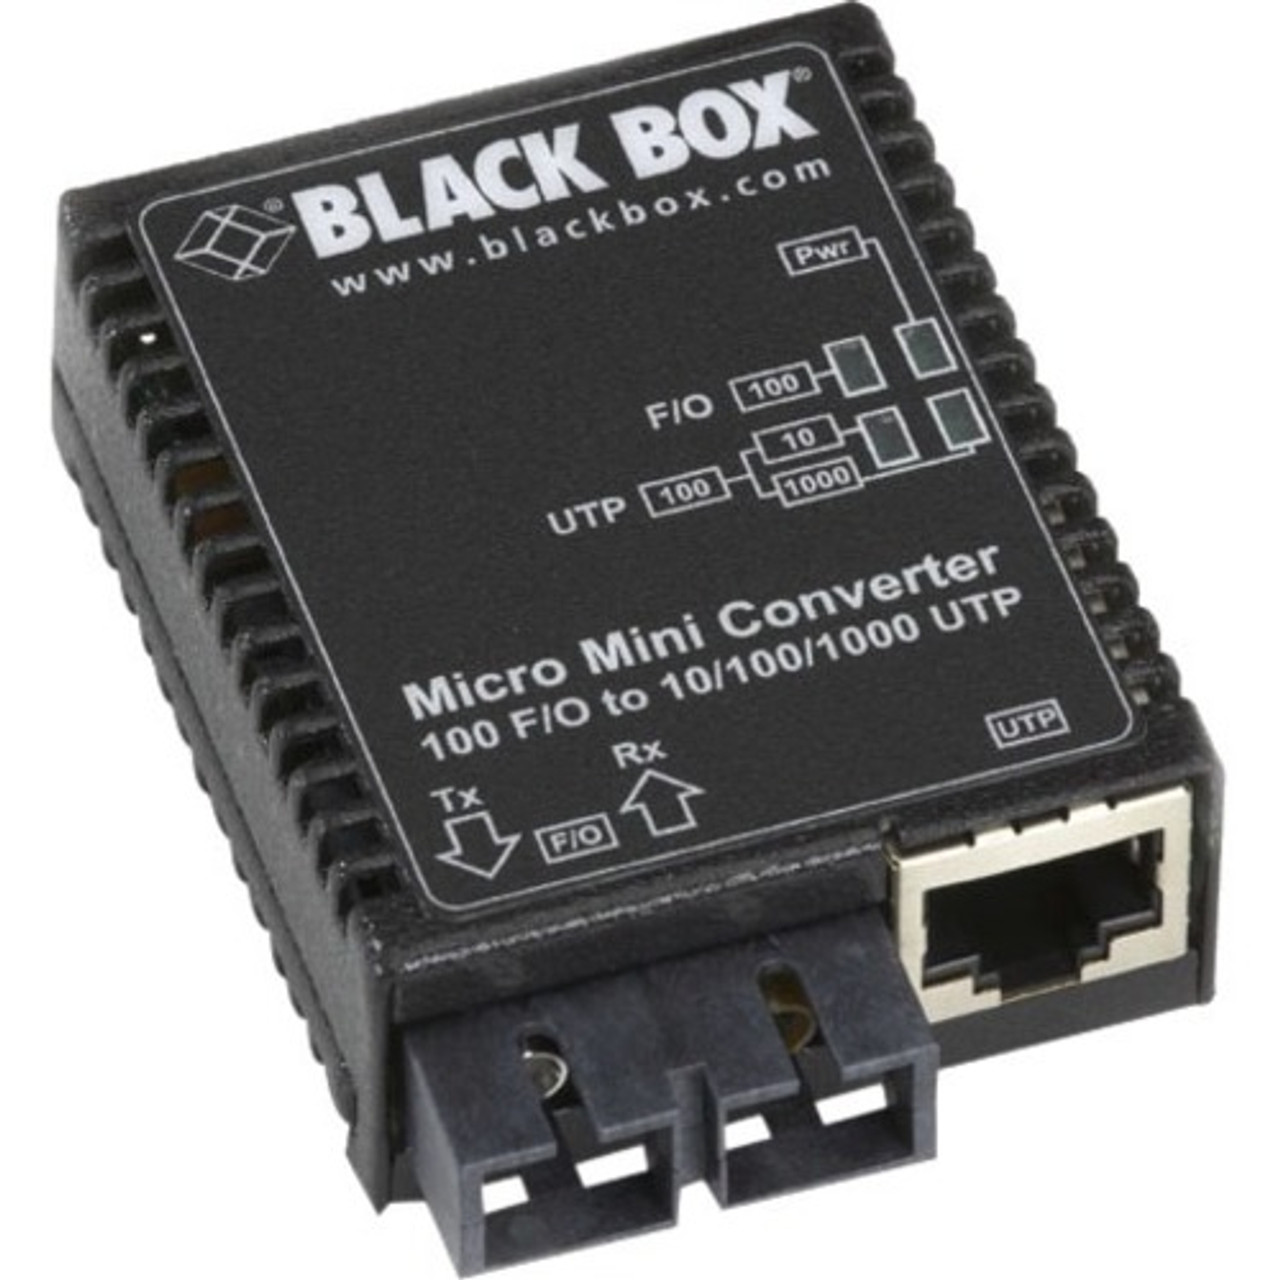 Black Box LMC404A